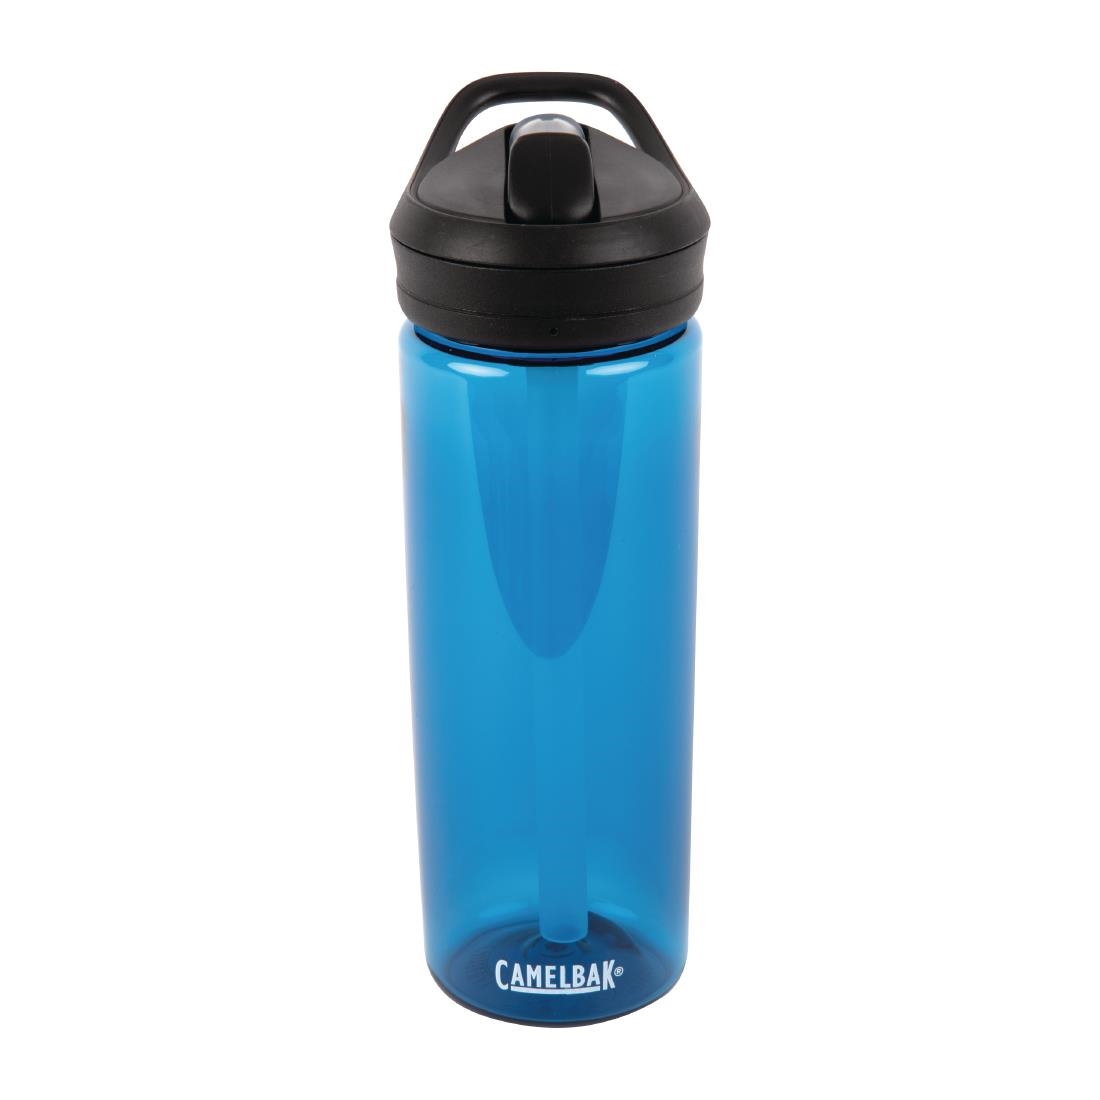 CamelBak Eddy + Reusable Water Bottle Oxford Blue 600ml / 21oz